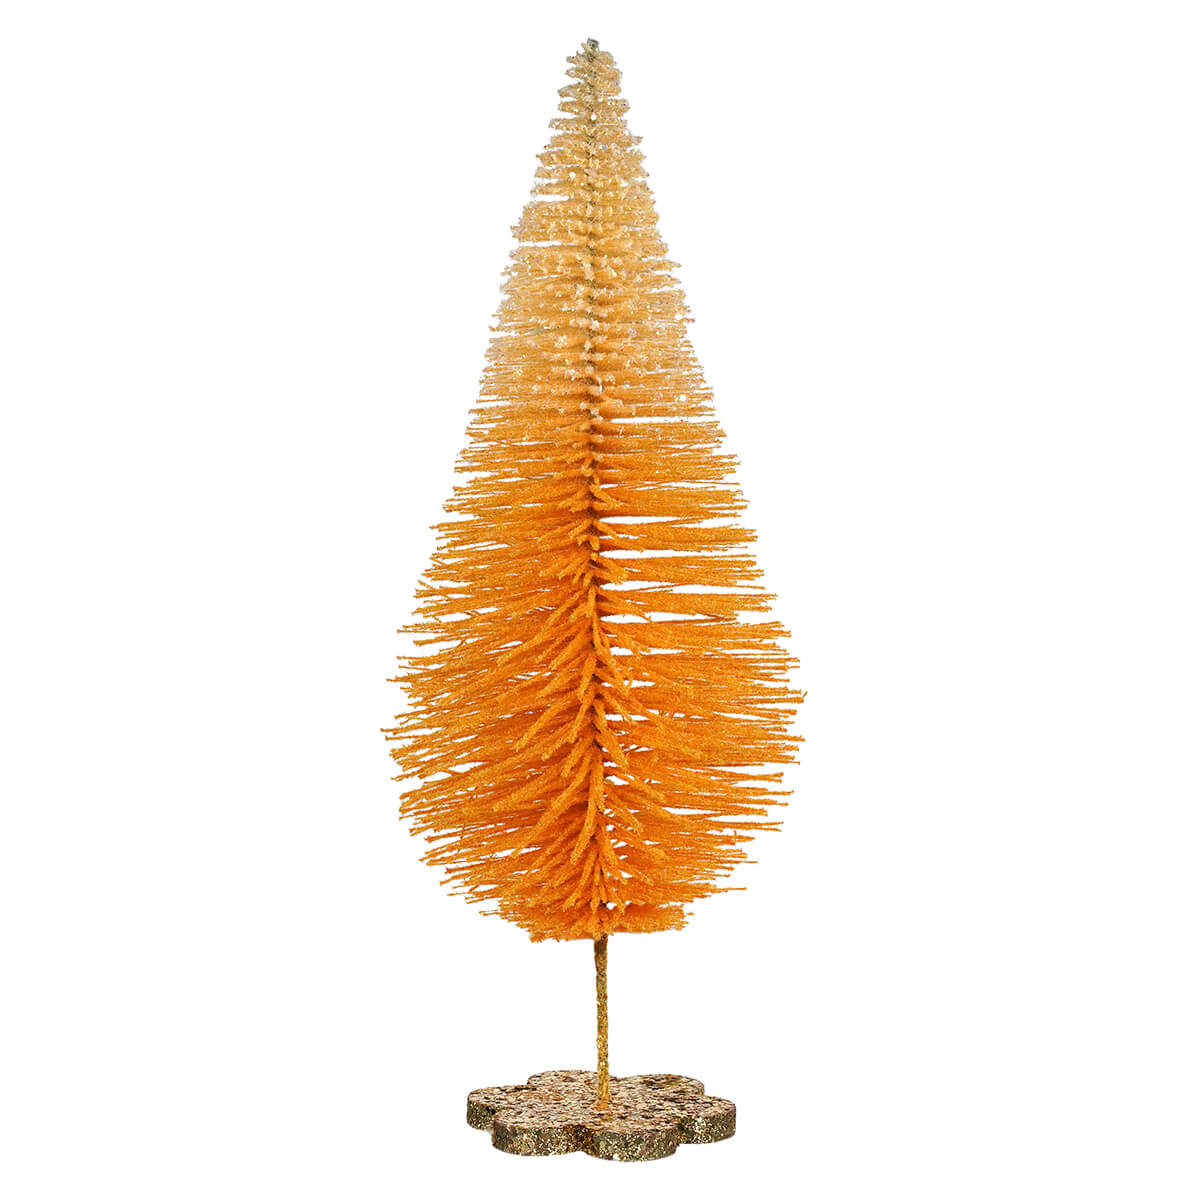 Orange Flocked Spiraled Tree With Gold Glittered Base